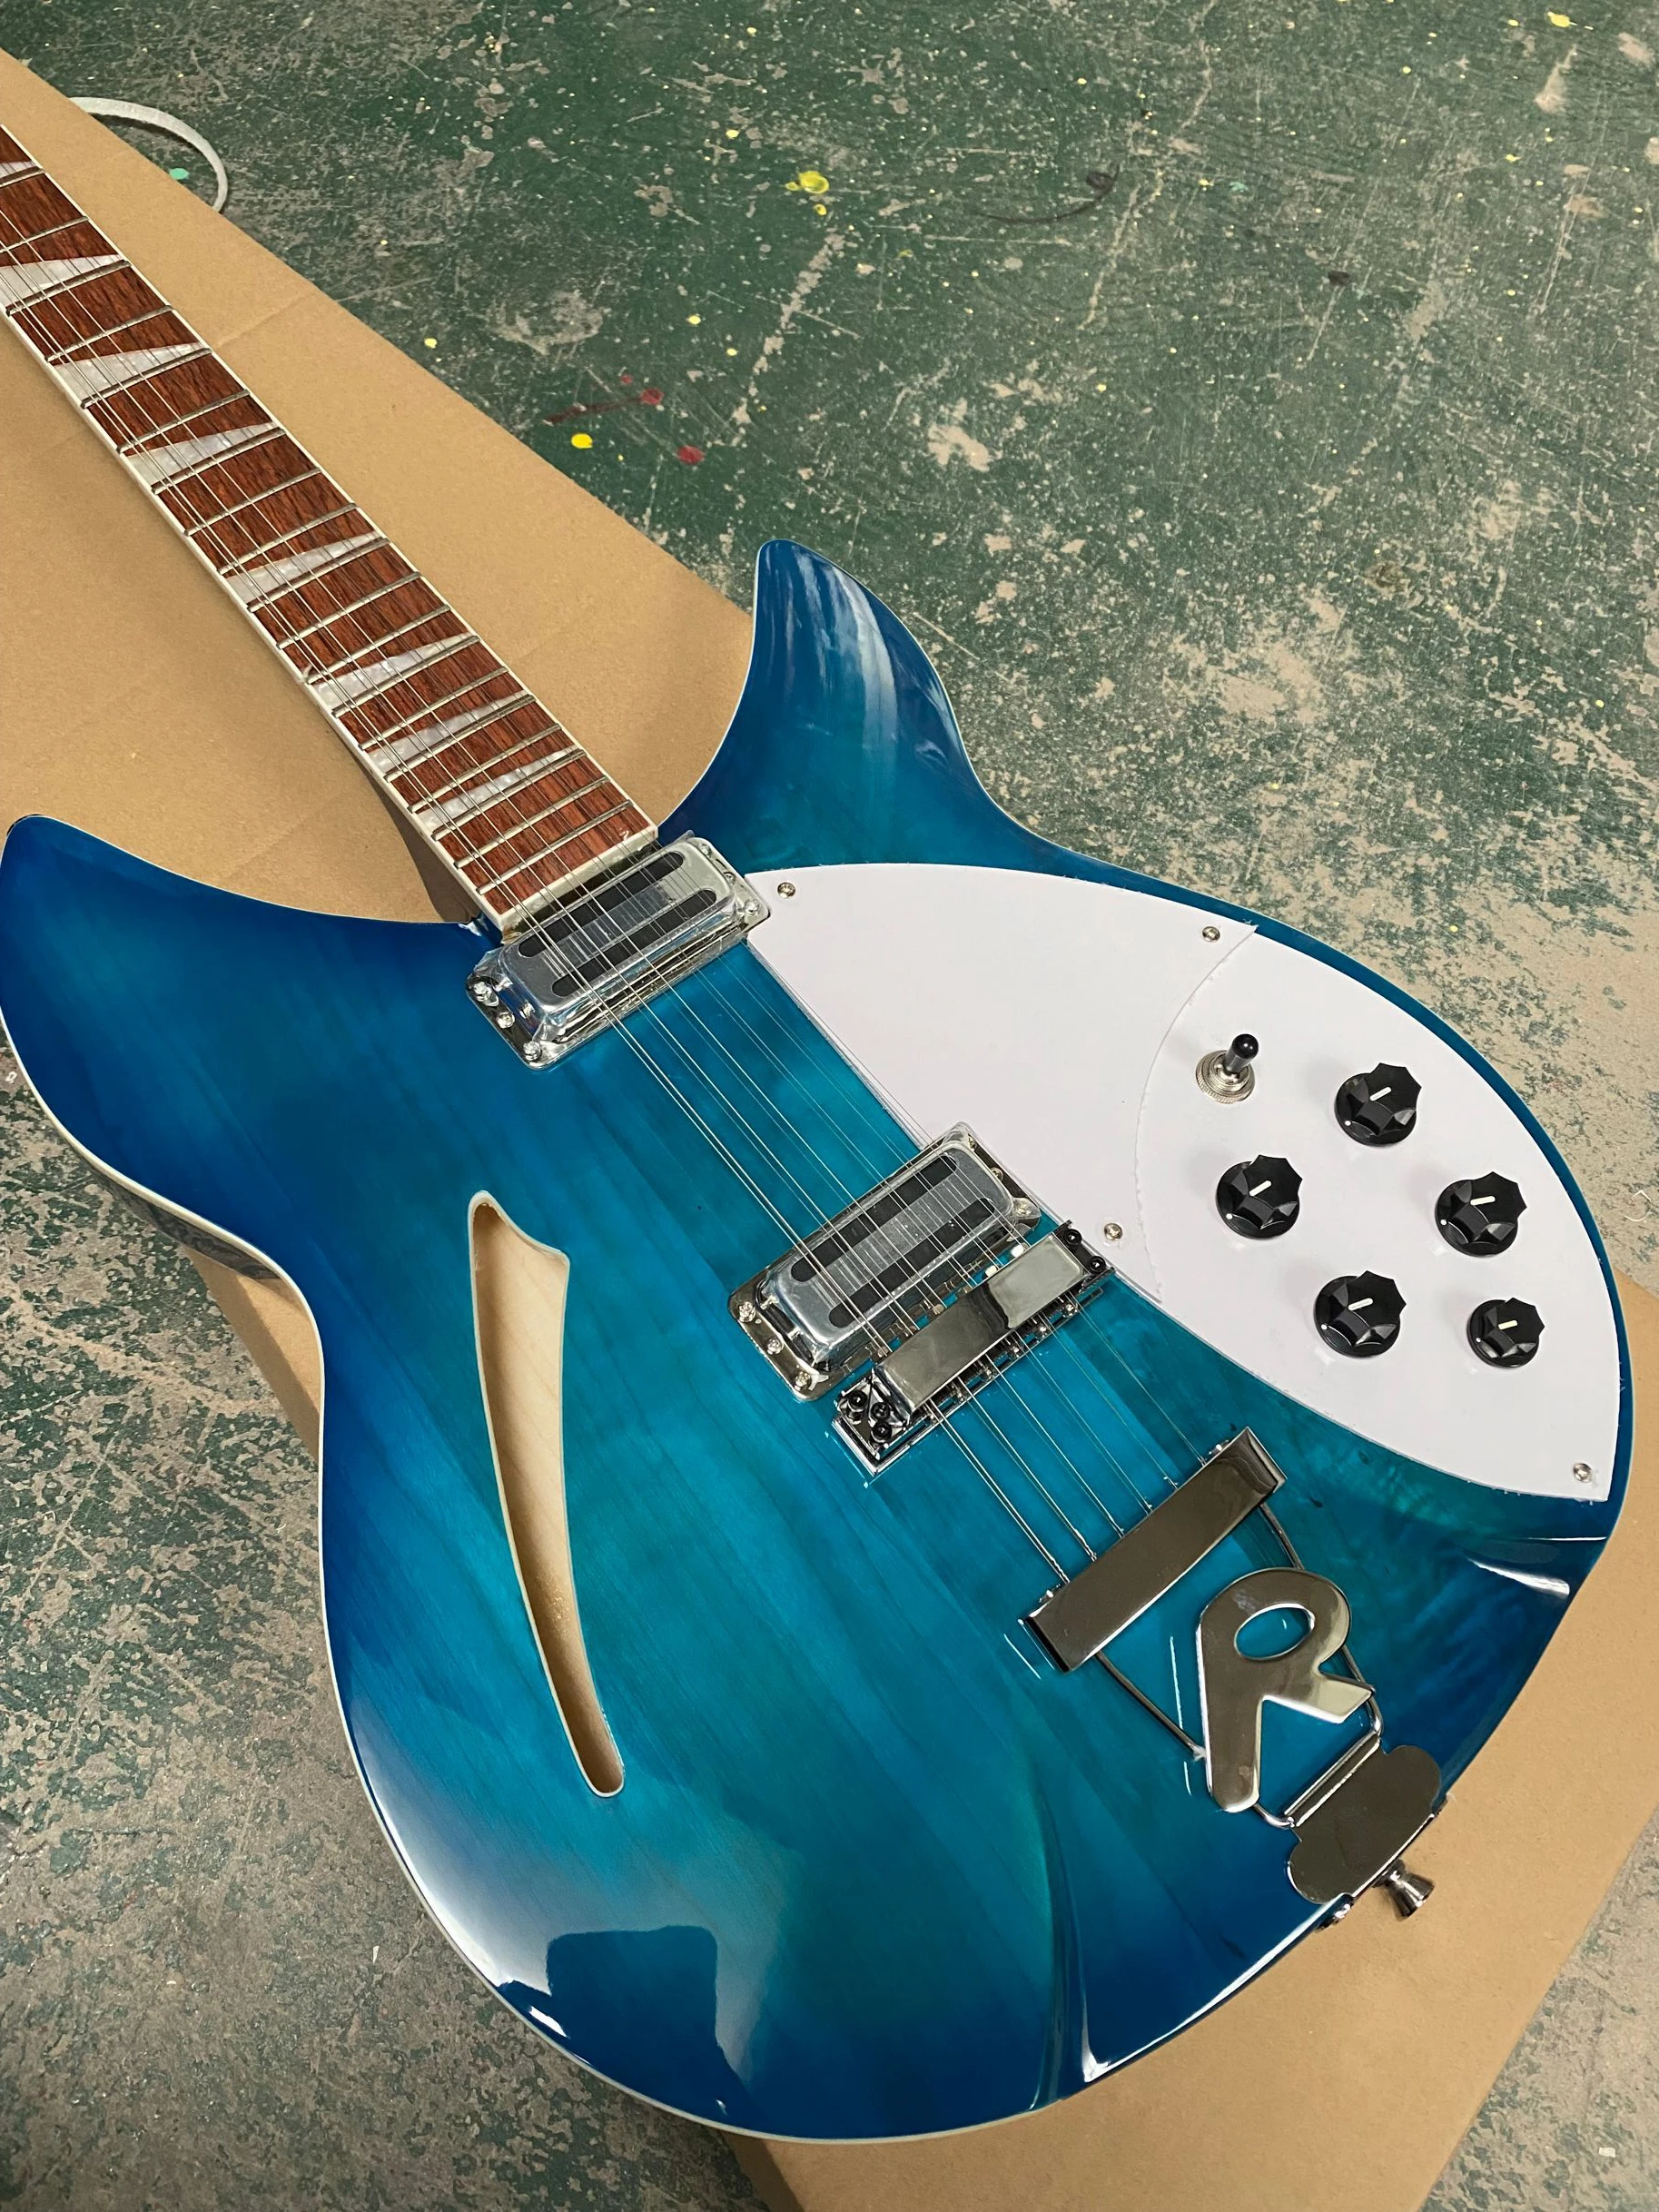 

Custom RIC 12-струнная синяя полуполая электрическая гитара, одно F-отверстие, Кленовая фингерборд, белая жемчужная треугольная инкрустация, черн...